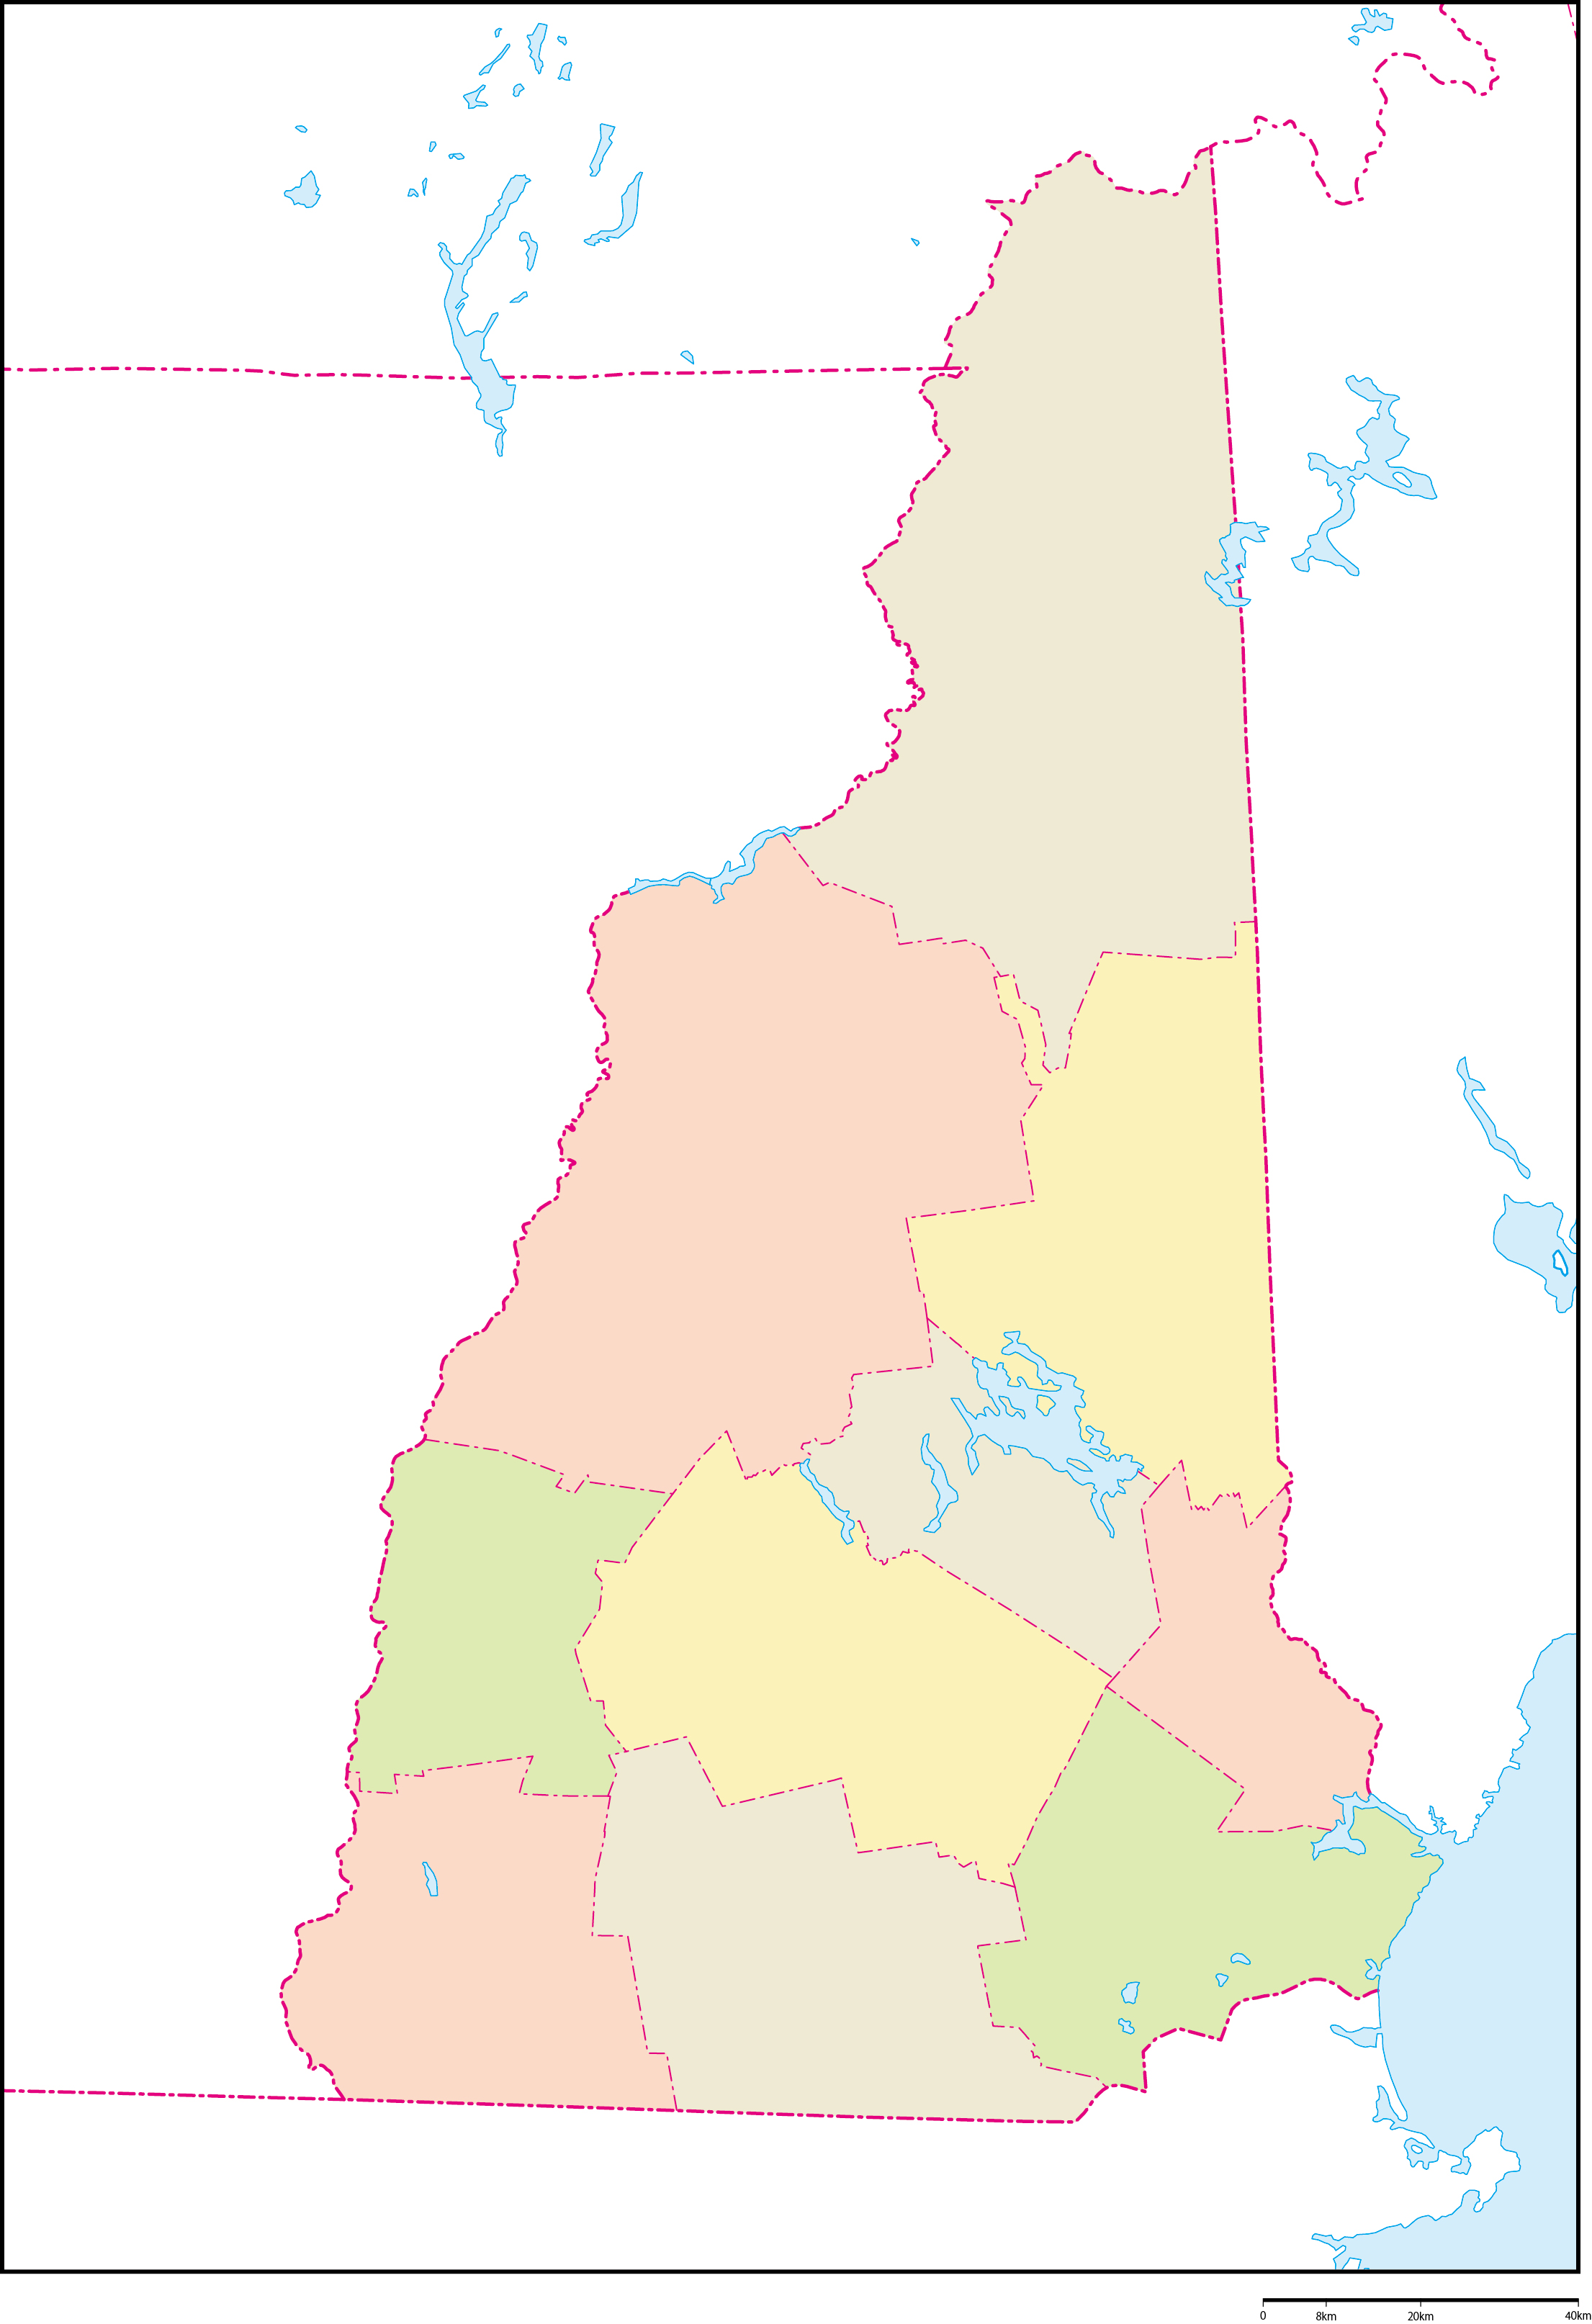 ニューハンプシャー州郡色分け地図フリーデータの画像